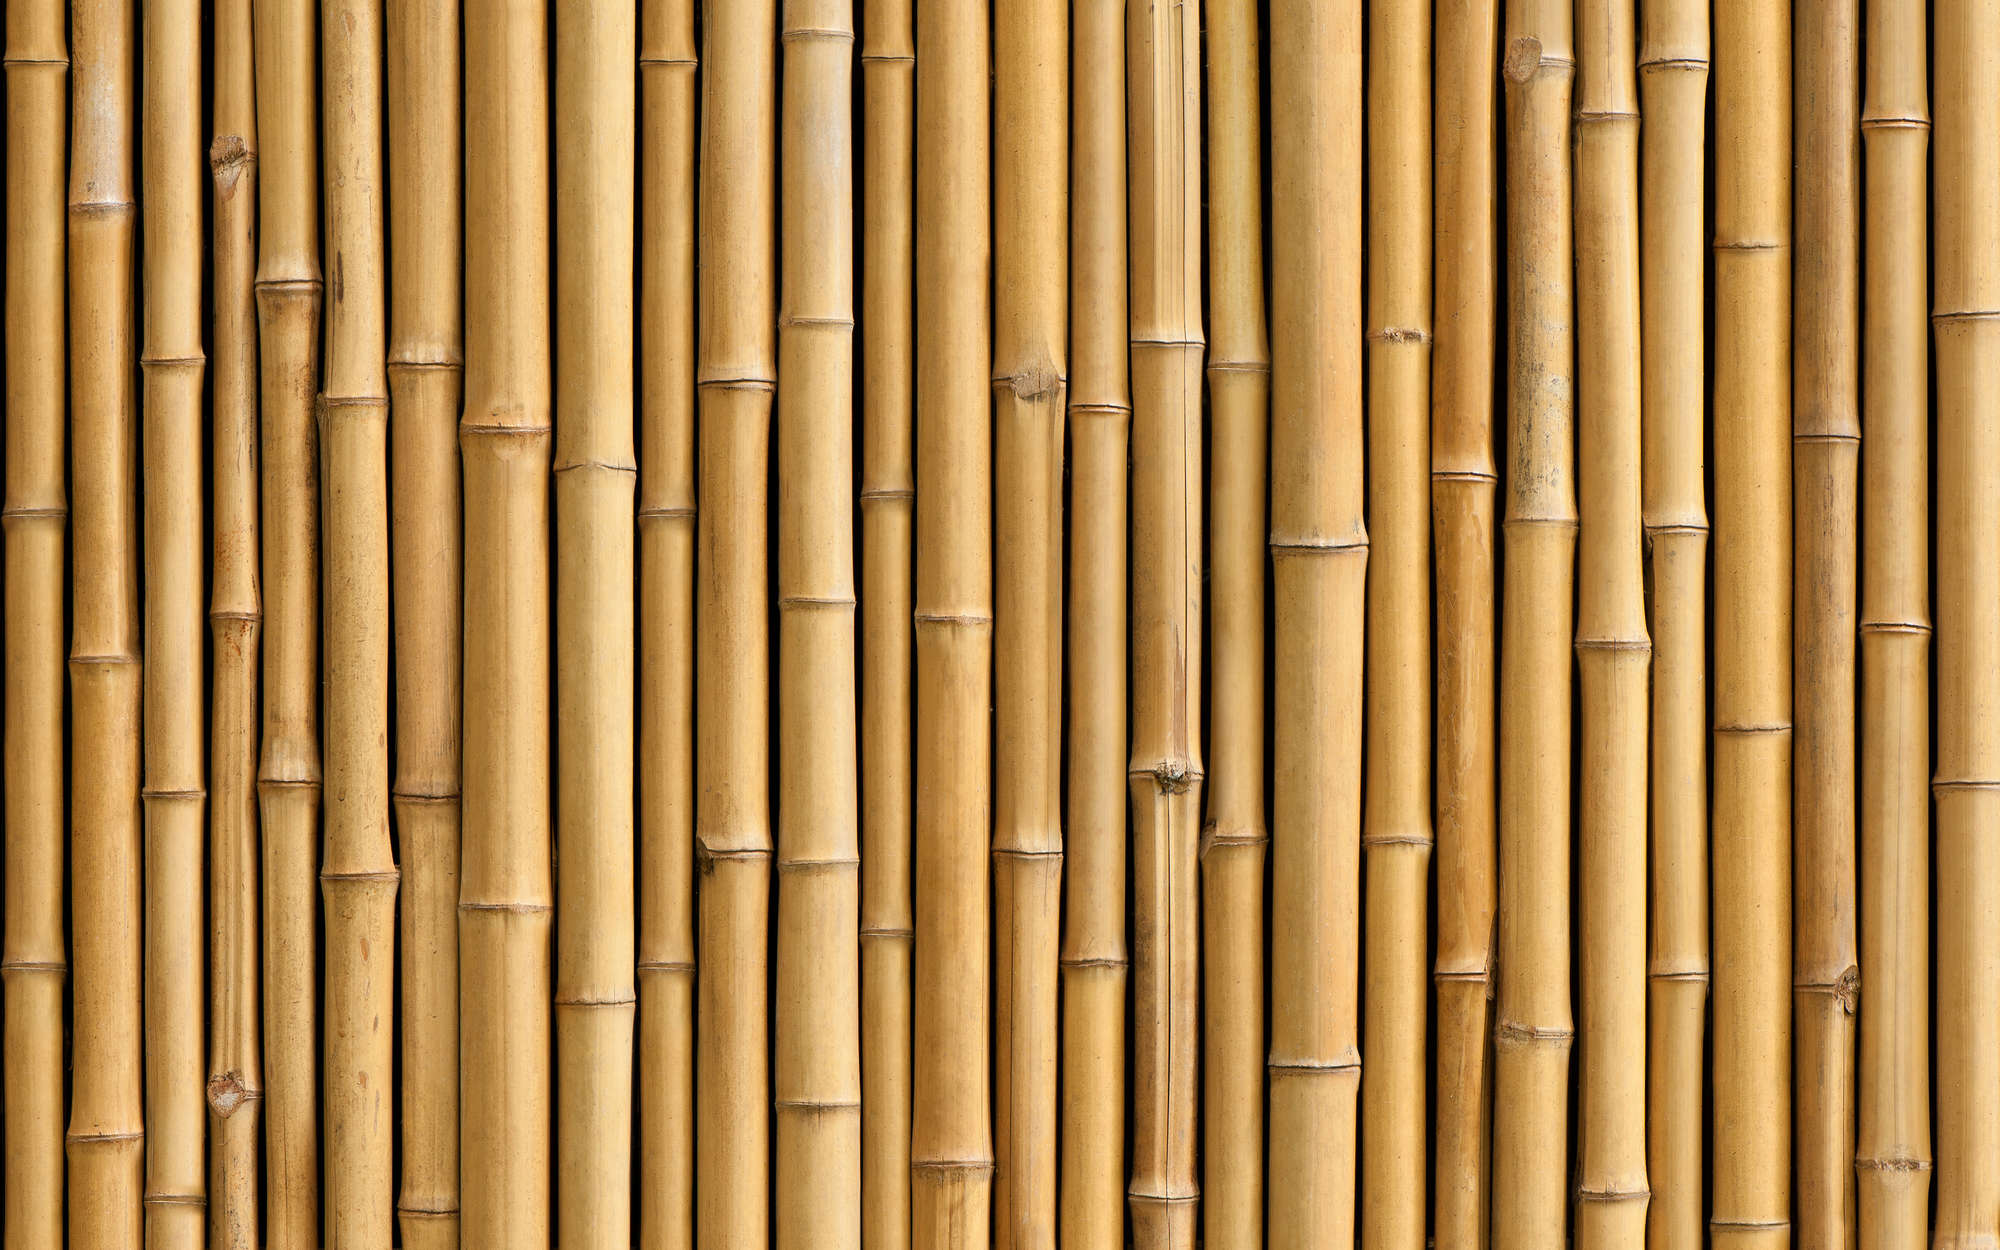             Bamboe muurschildering in beige - structuurvlies
        